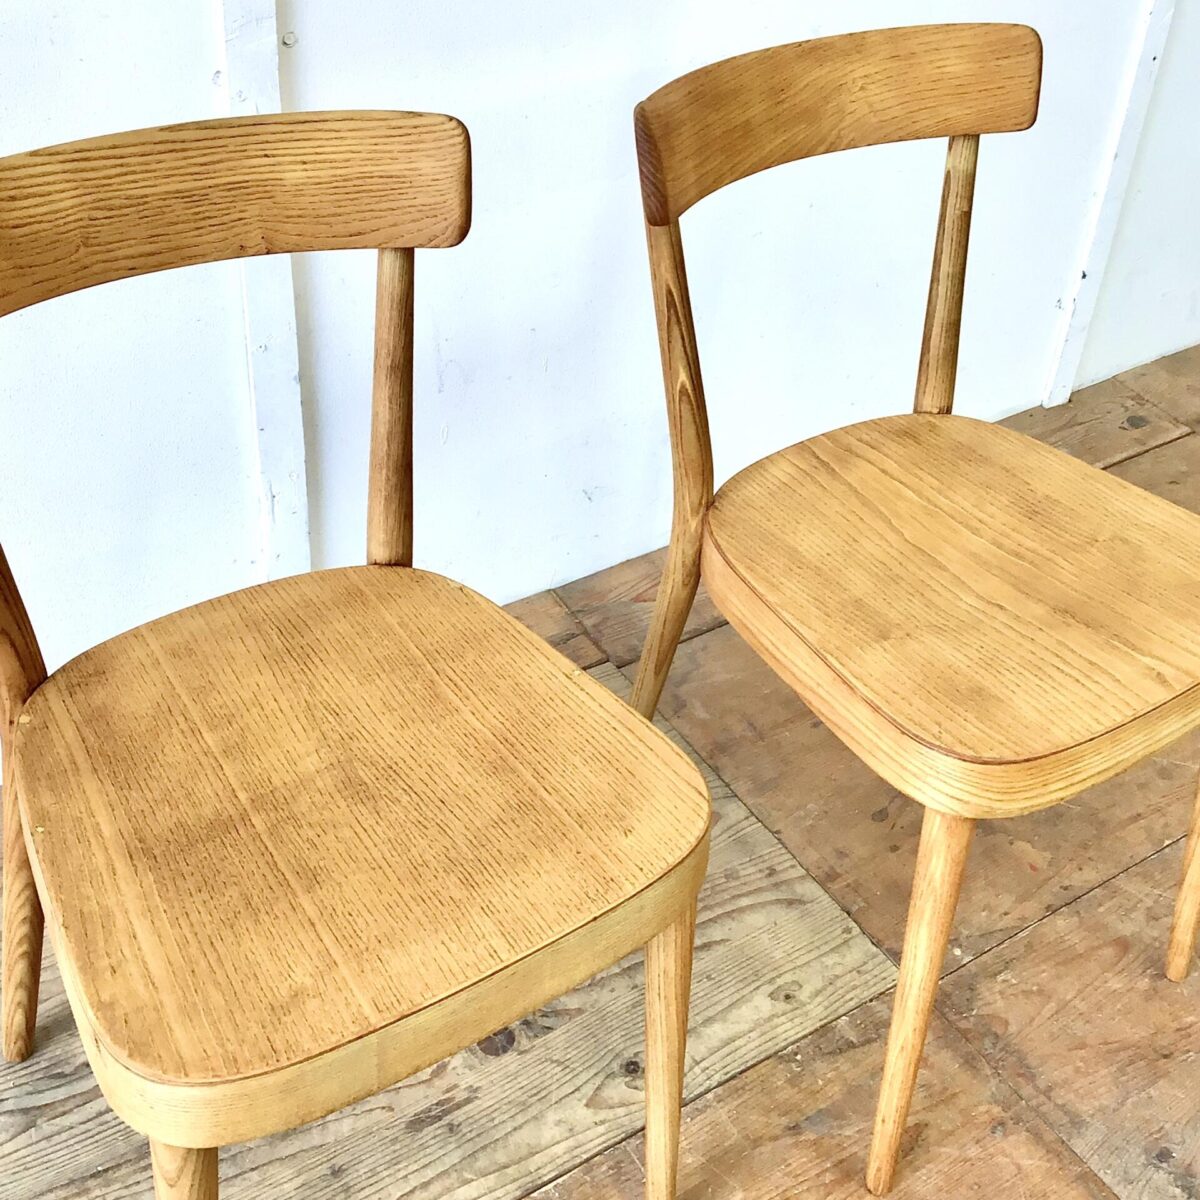 Zwei horgenglarus Stühle von Max Moser aus Eschenholz. Die Stühle sind stabil, Vorderbeine teilweise frisch eingeleimt. Komplett geschliffen und Natur geölt. Warm-matte honiggelbe Ausstrahlung, mit Alterspatina. 